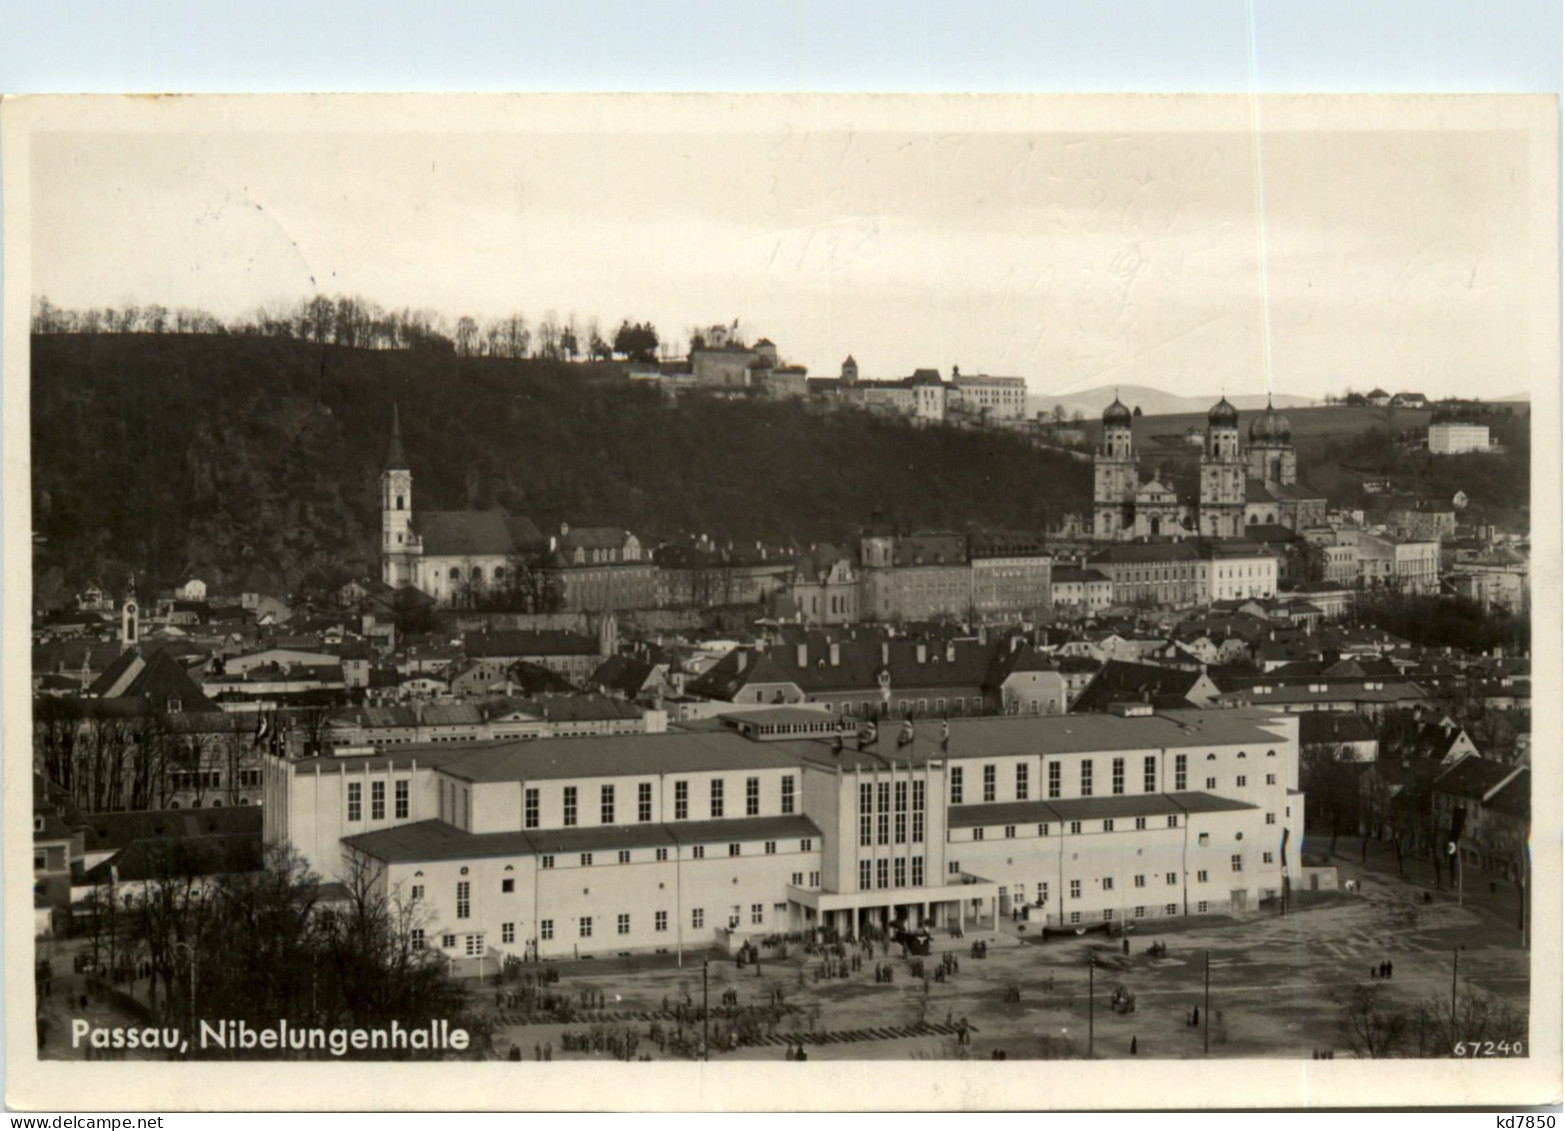 Passau, Grüsse, Festung Oberhaus - Passau